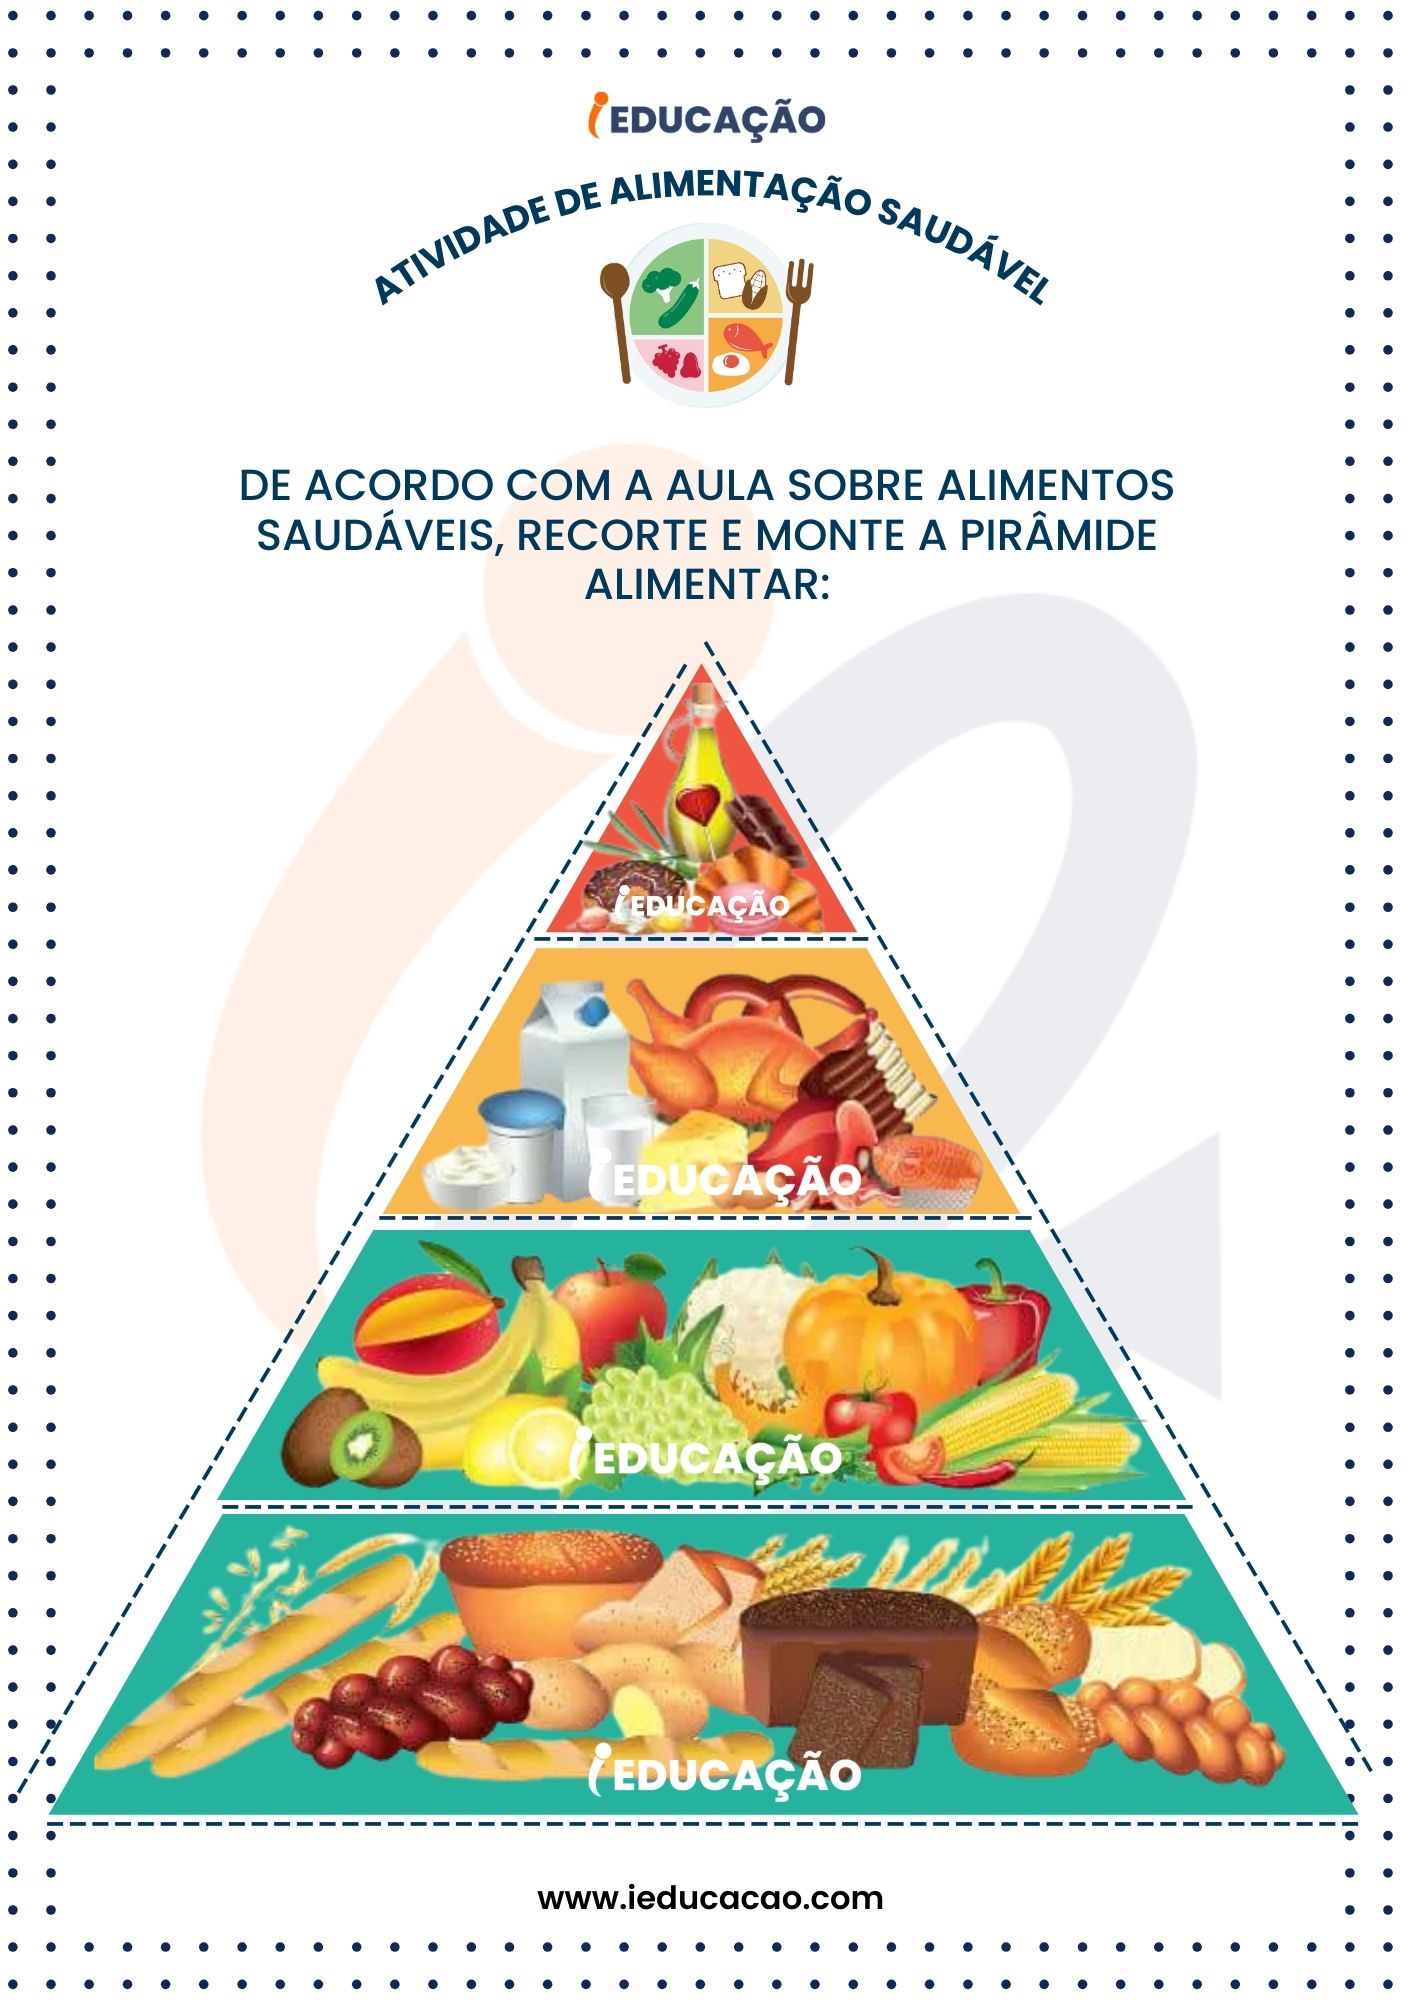 Atividades de Alimentação Saudável - Pirâmide Alimentar para Educação Infantil - Anexo.jpg